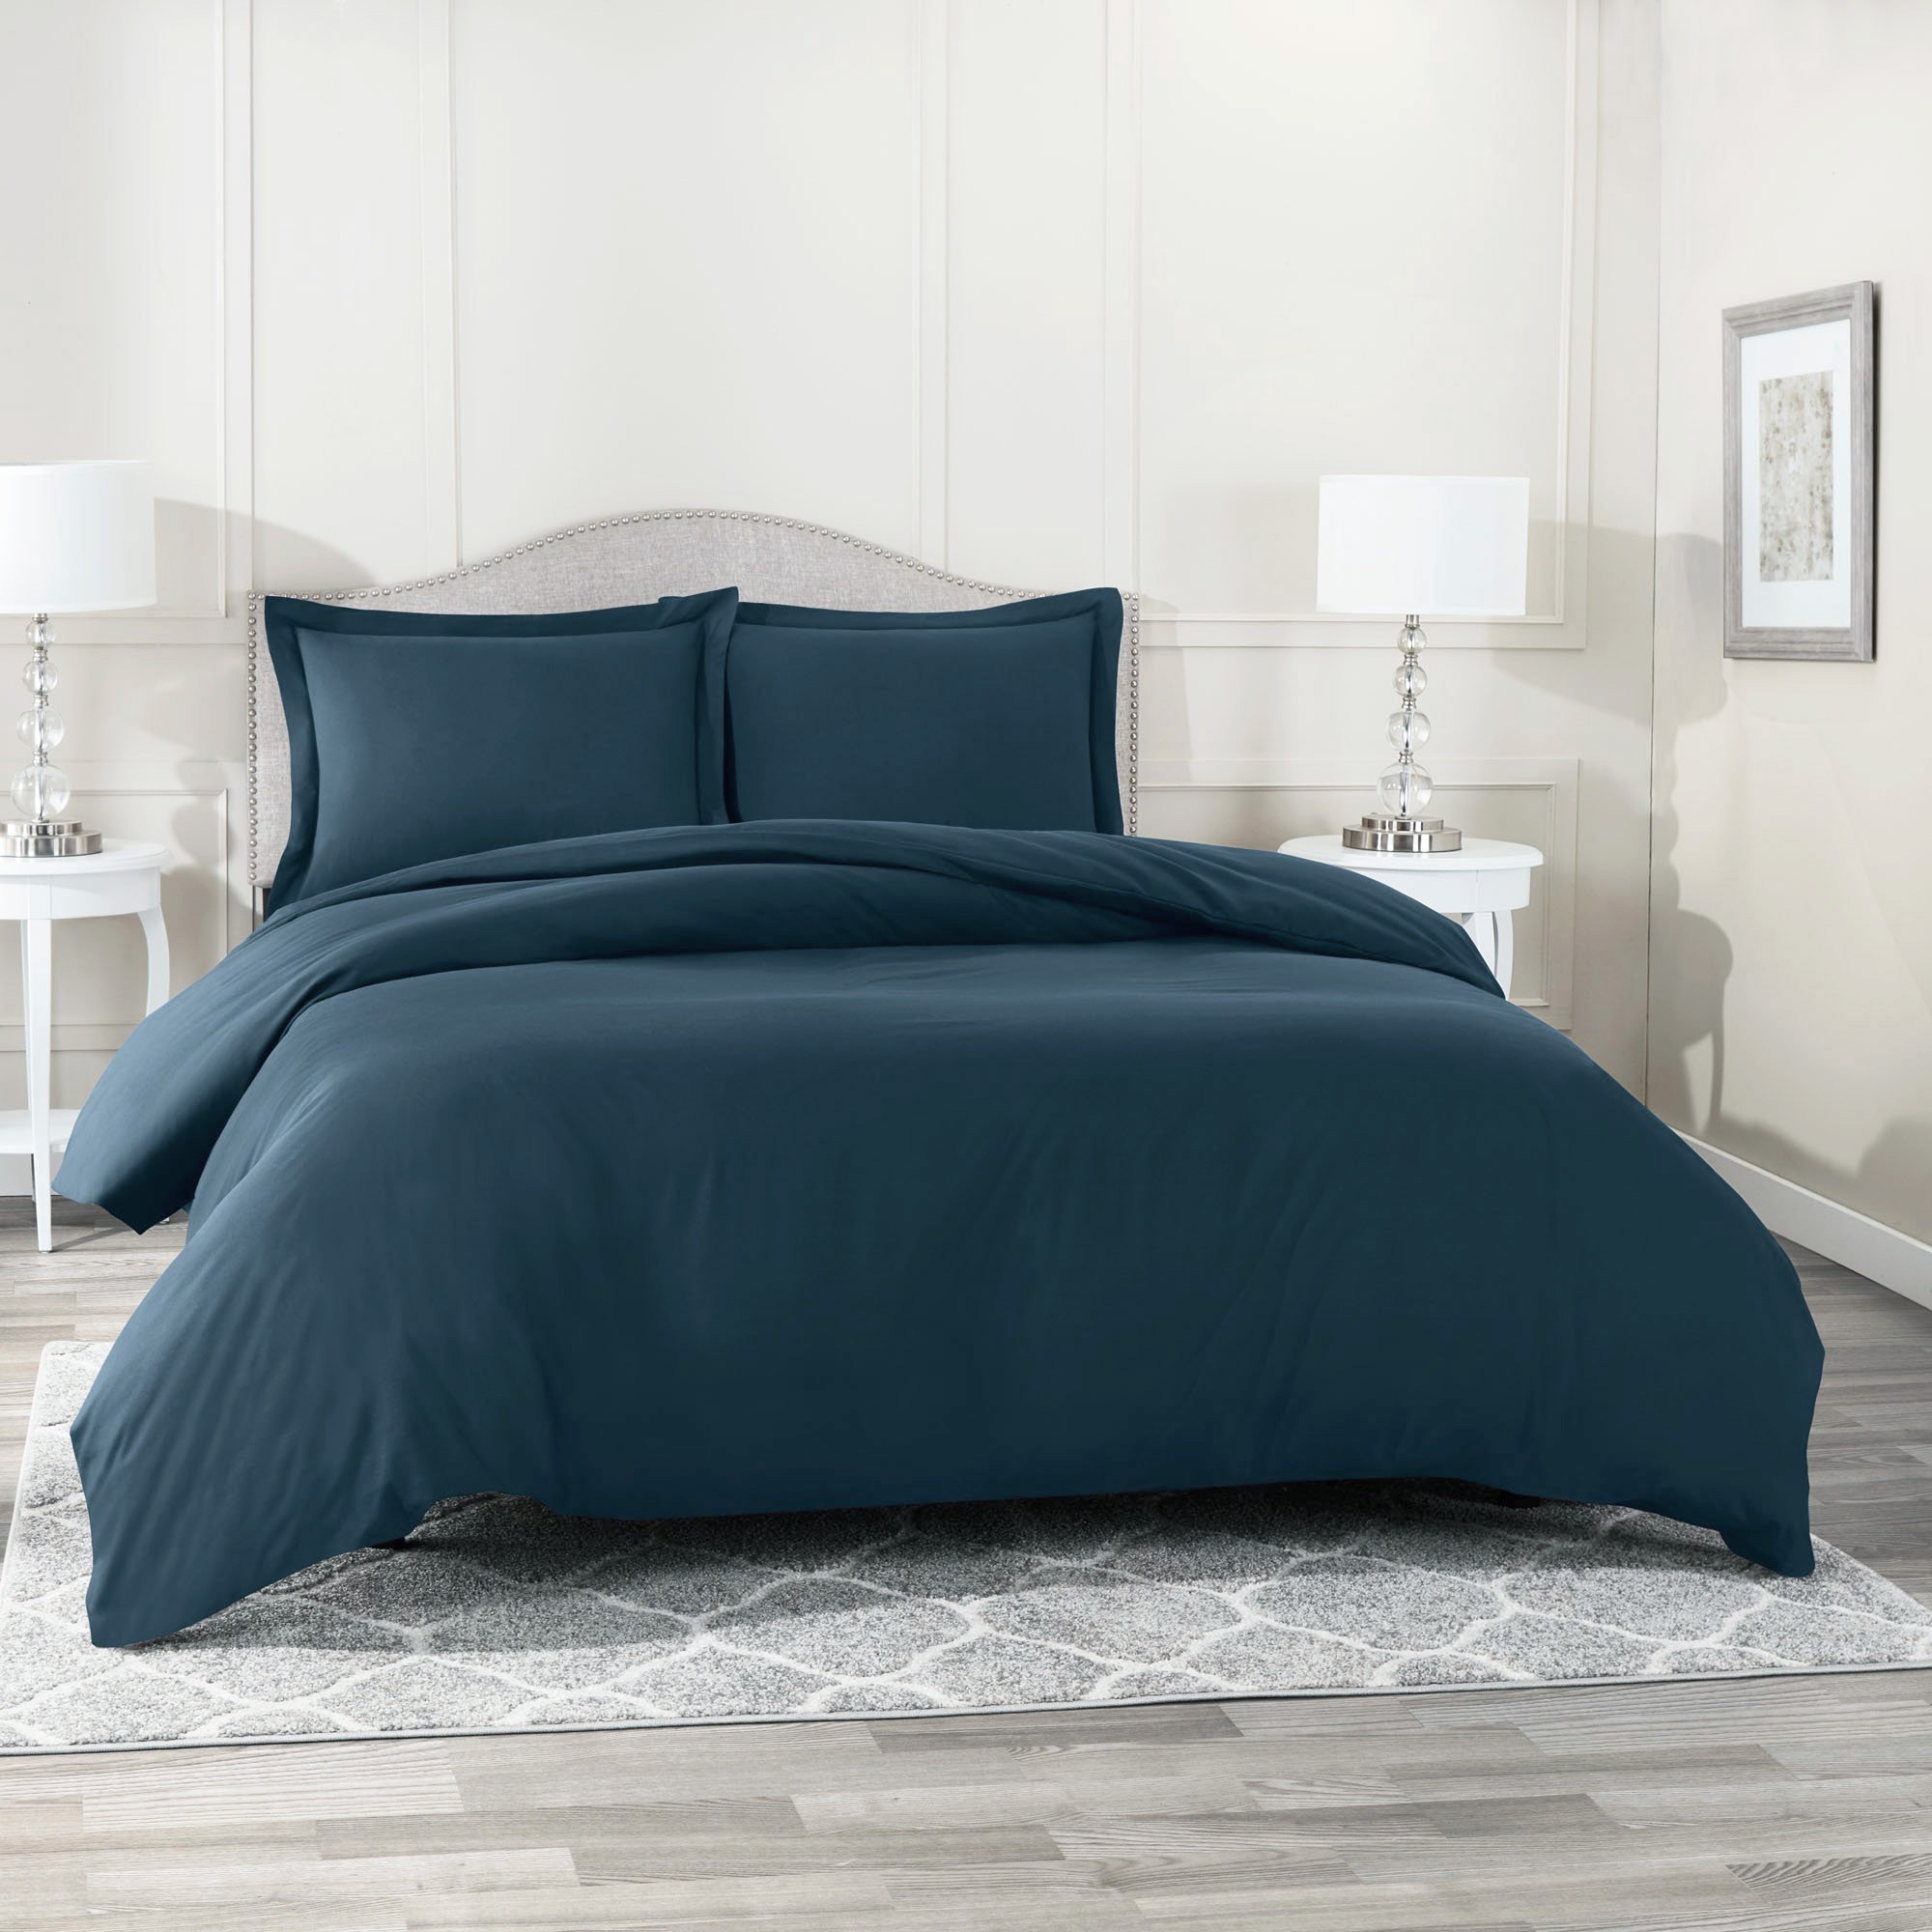 Комплект постельного белья из сатина ROS-007 темно-синий Elintale